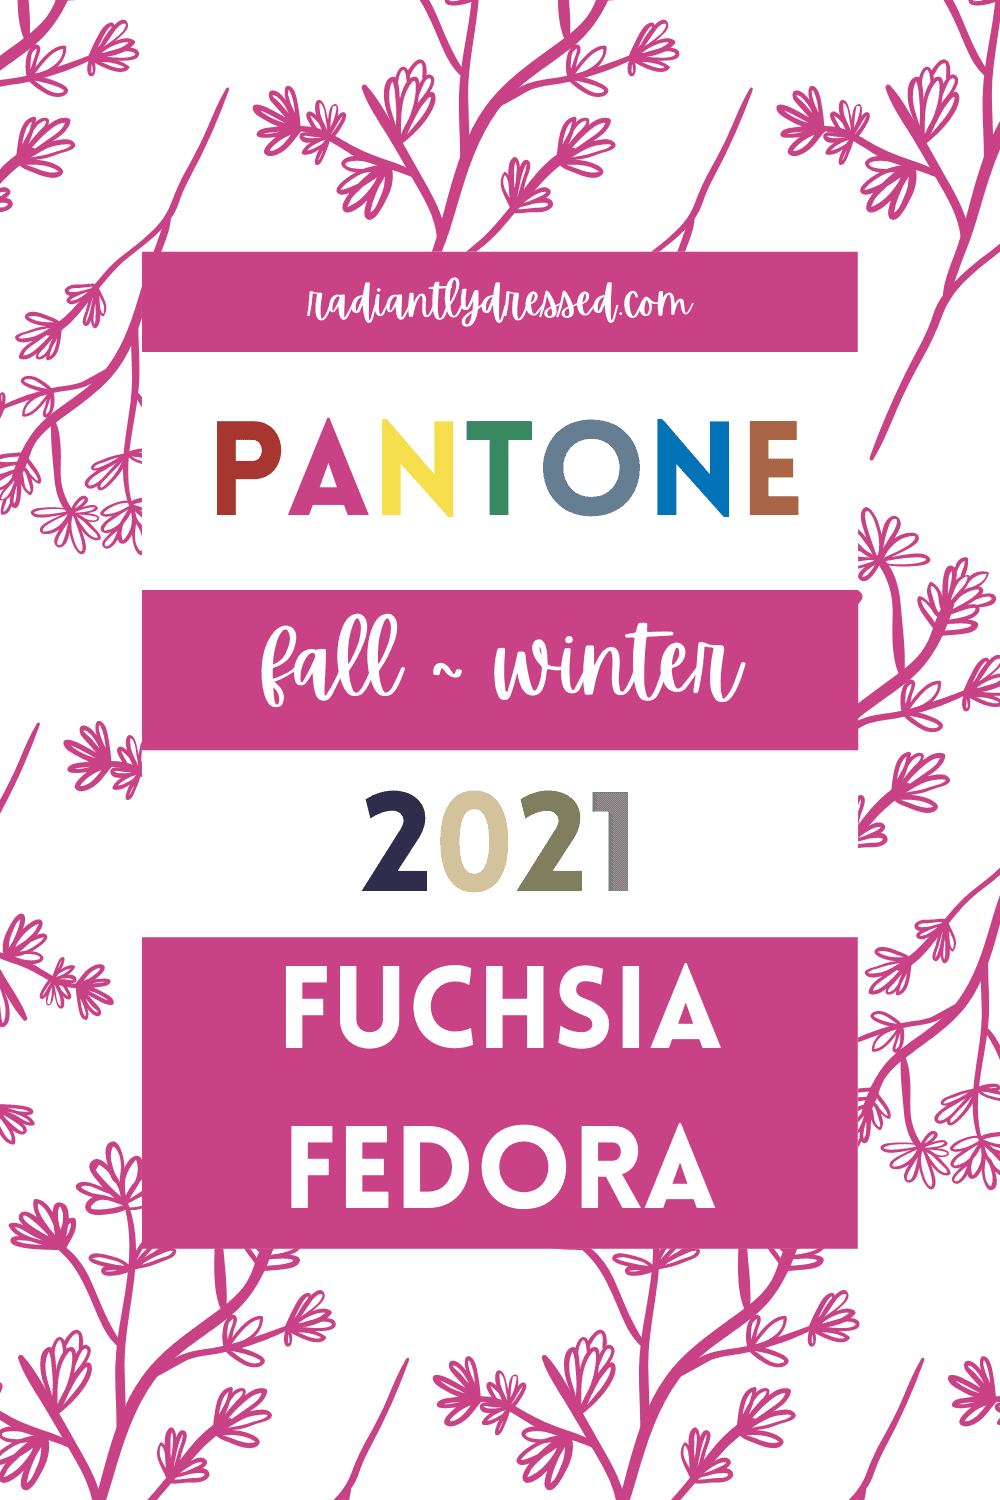 Pantone Fuchsia Fedora